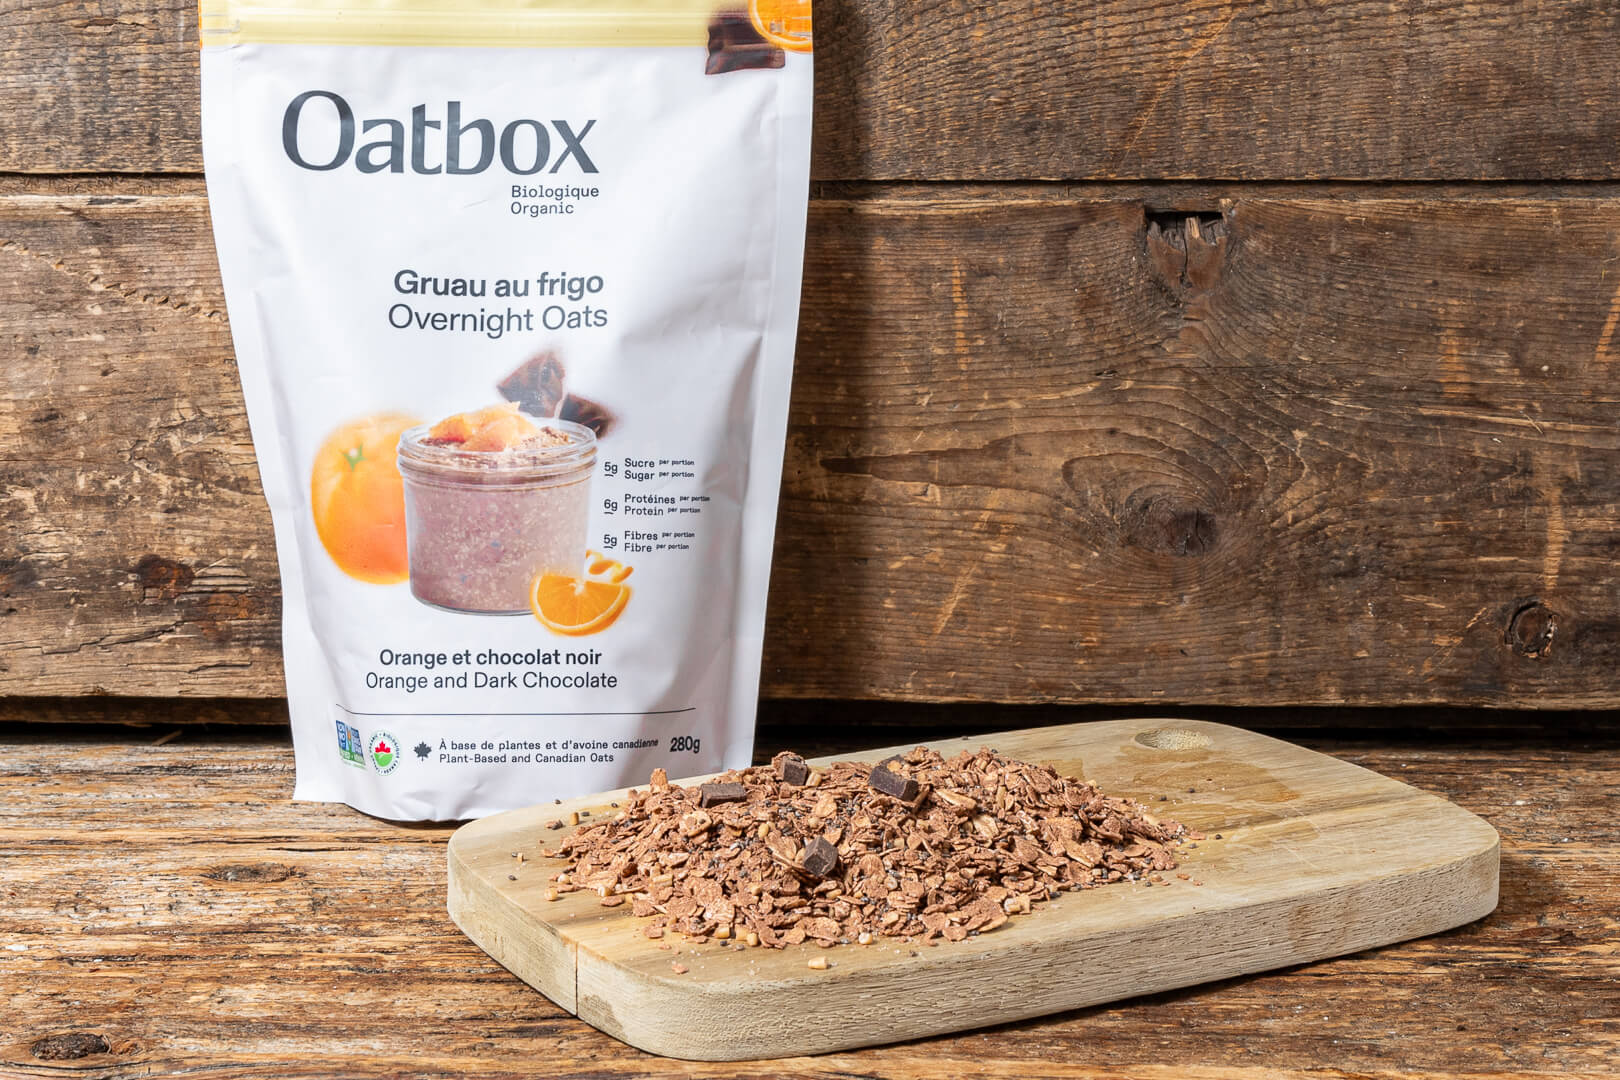 Nouveau* Gruau au frigo Orange et chocolat noir (280g) – Oatbox